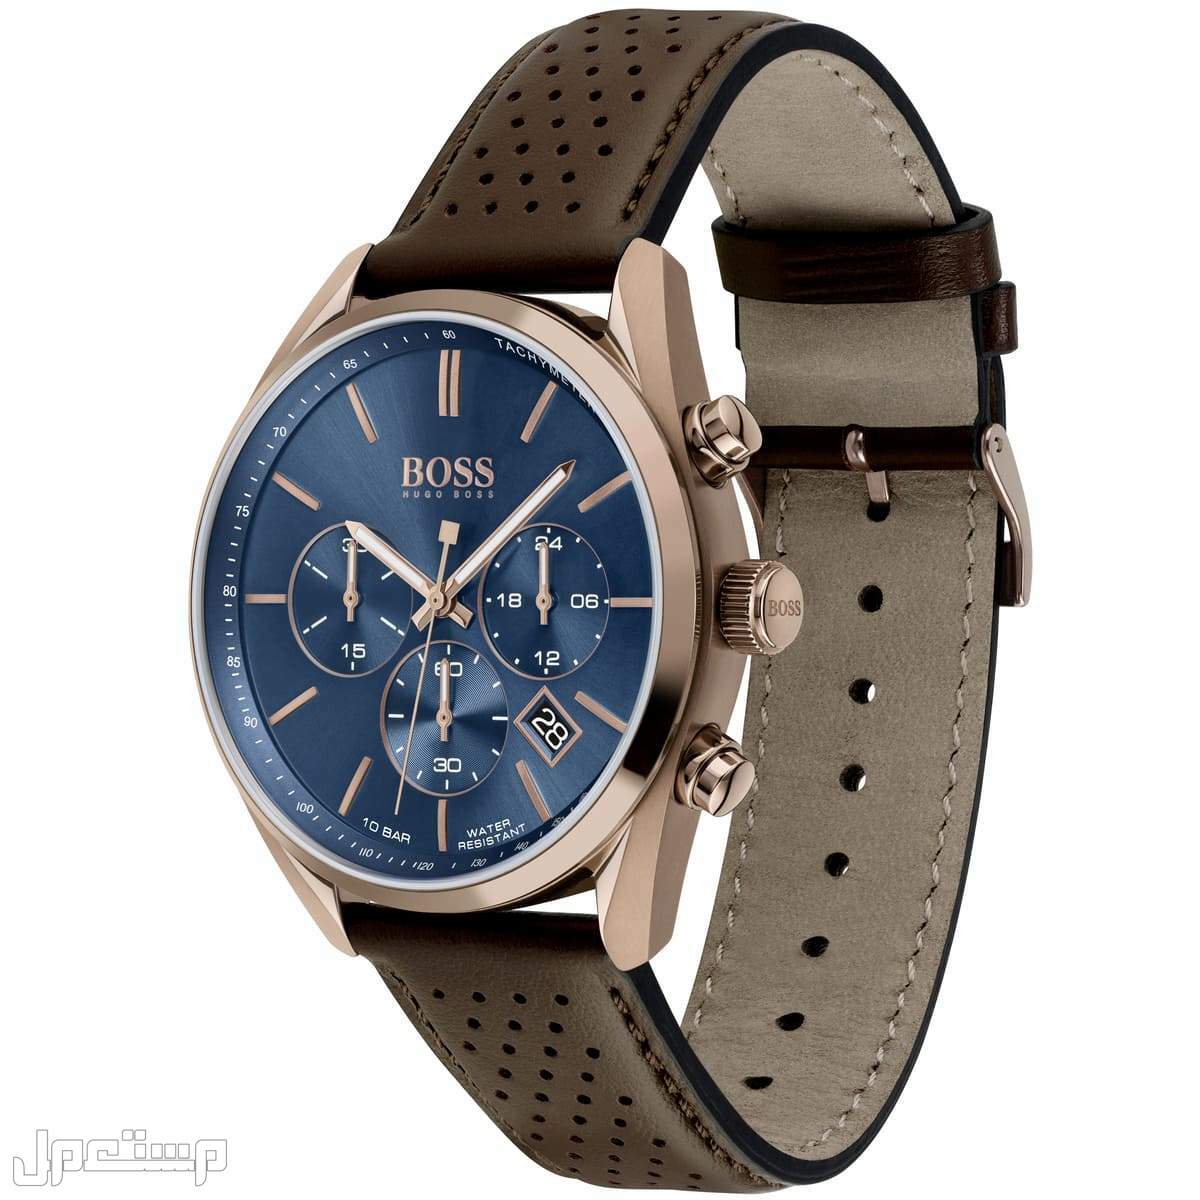 أفضل ساعات بوس Boss الأكثر مبيعا هذا العام وأسعارها ساع 1513817-hugo-boss-watch-men-blue-dial-leather-brown-strap-quartz-analog-chro